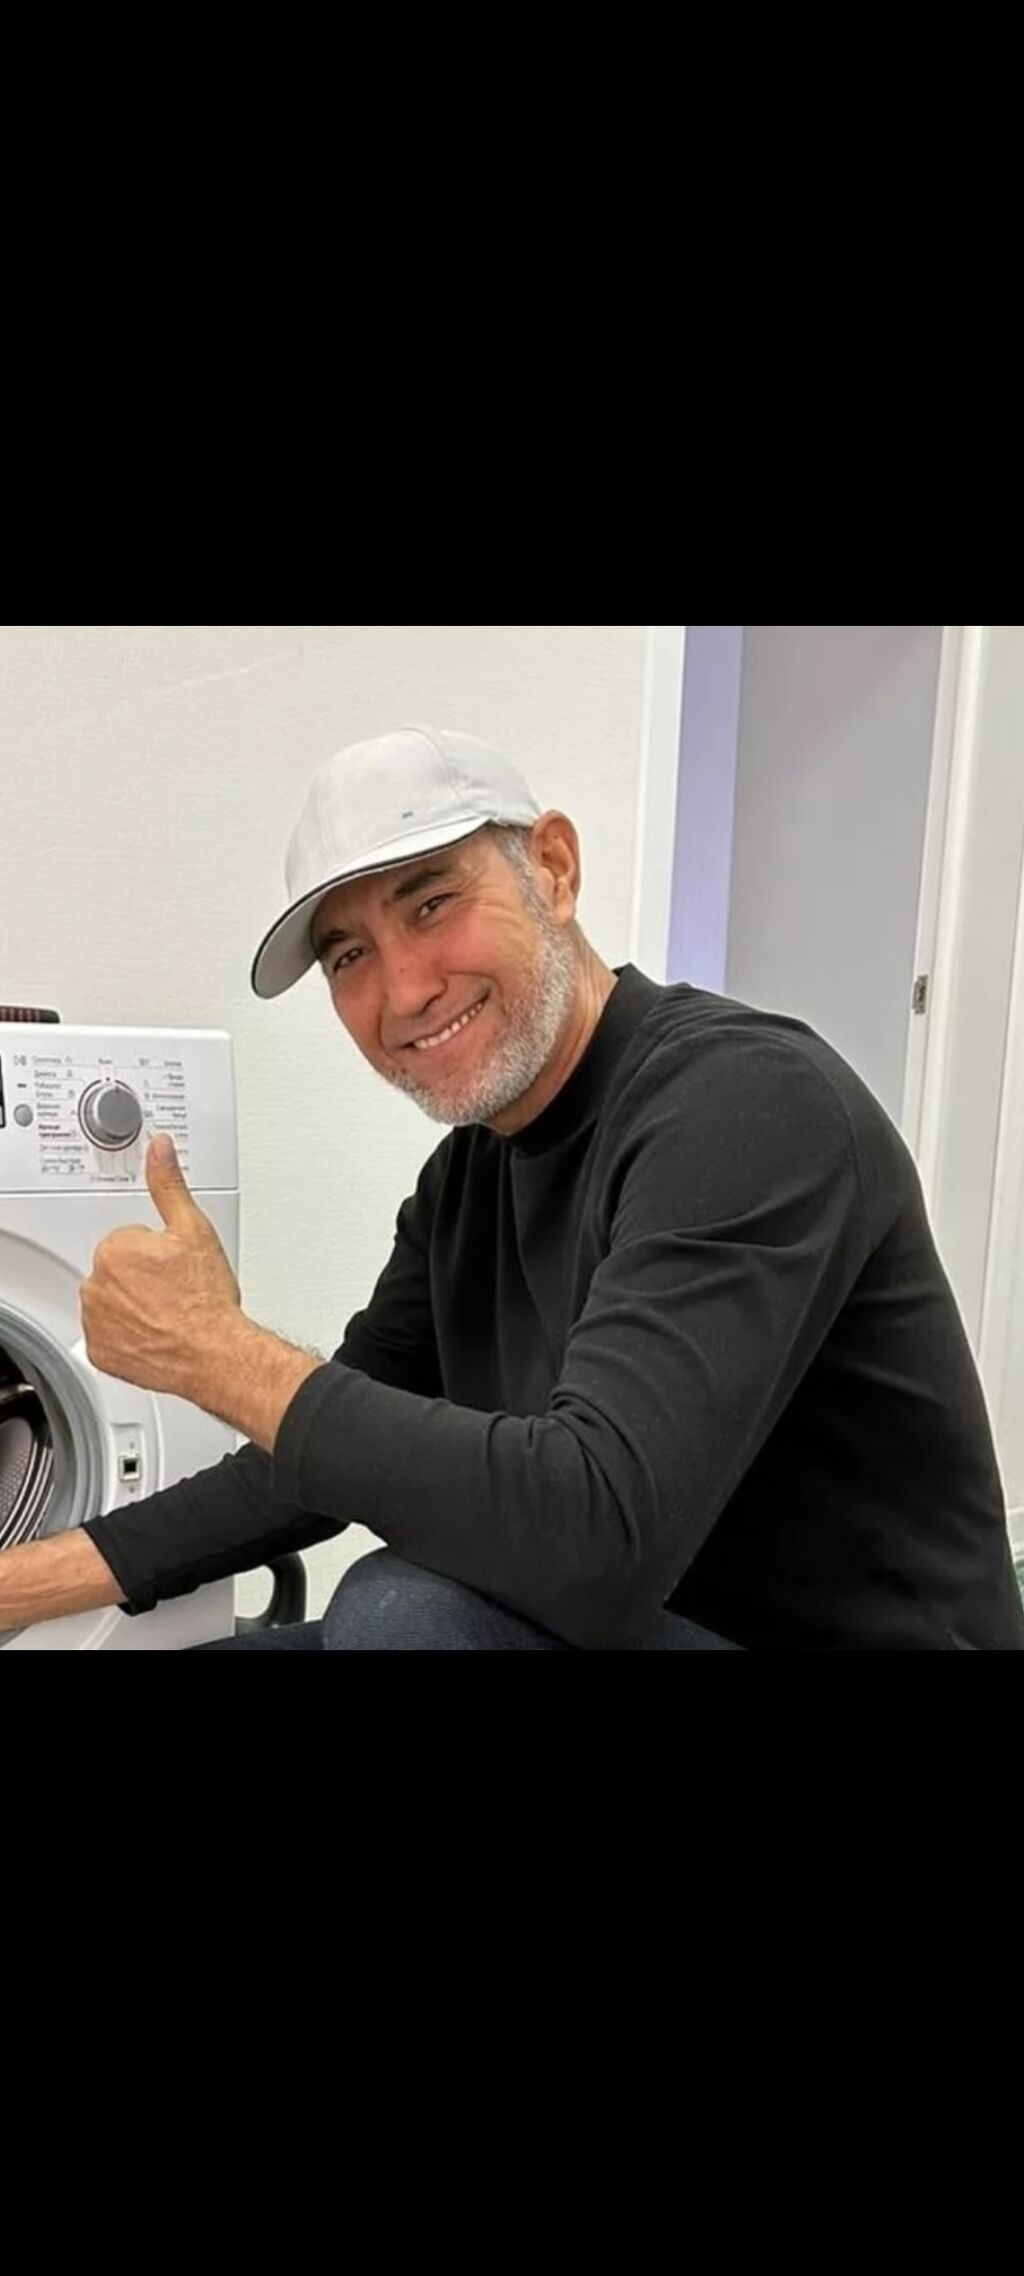 Неисправности стиральной машины LG - Топ самых популярных поломок